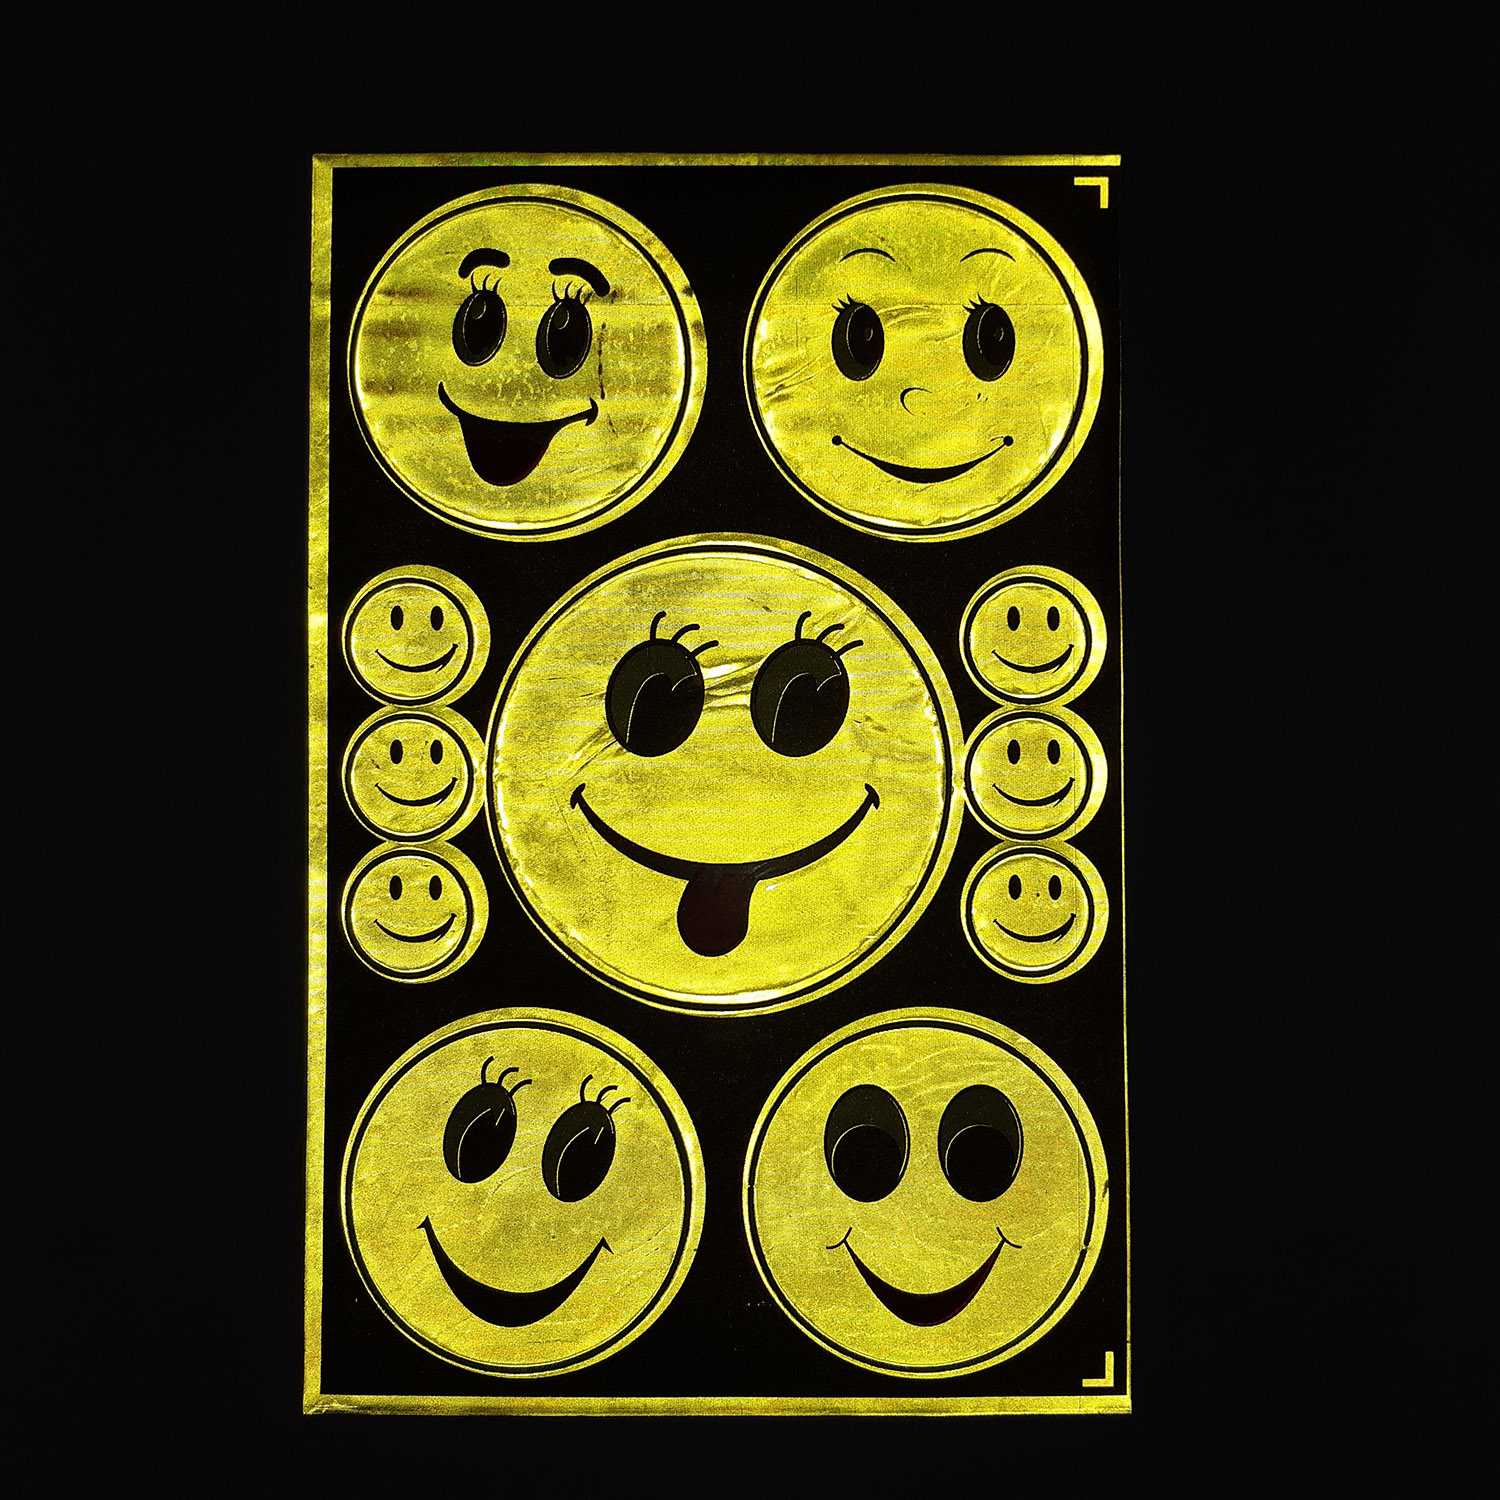 Tấm Sticker dán phản quang 11 hình mặt cười